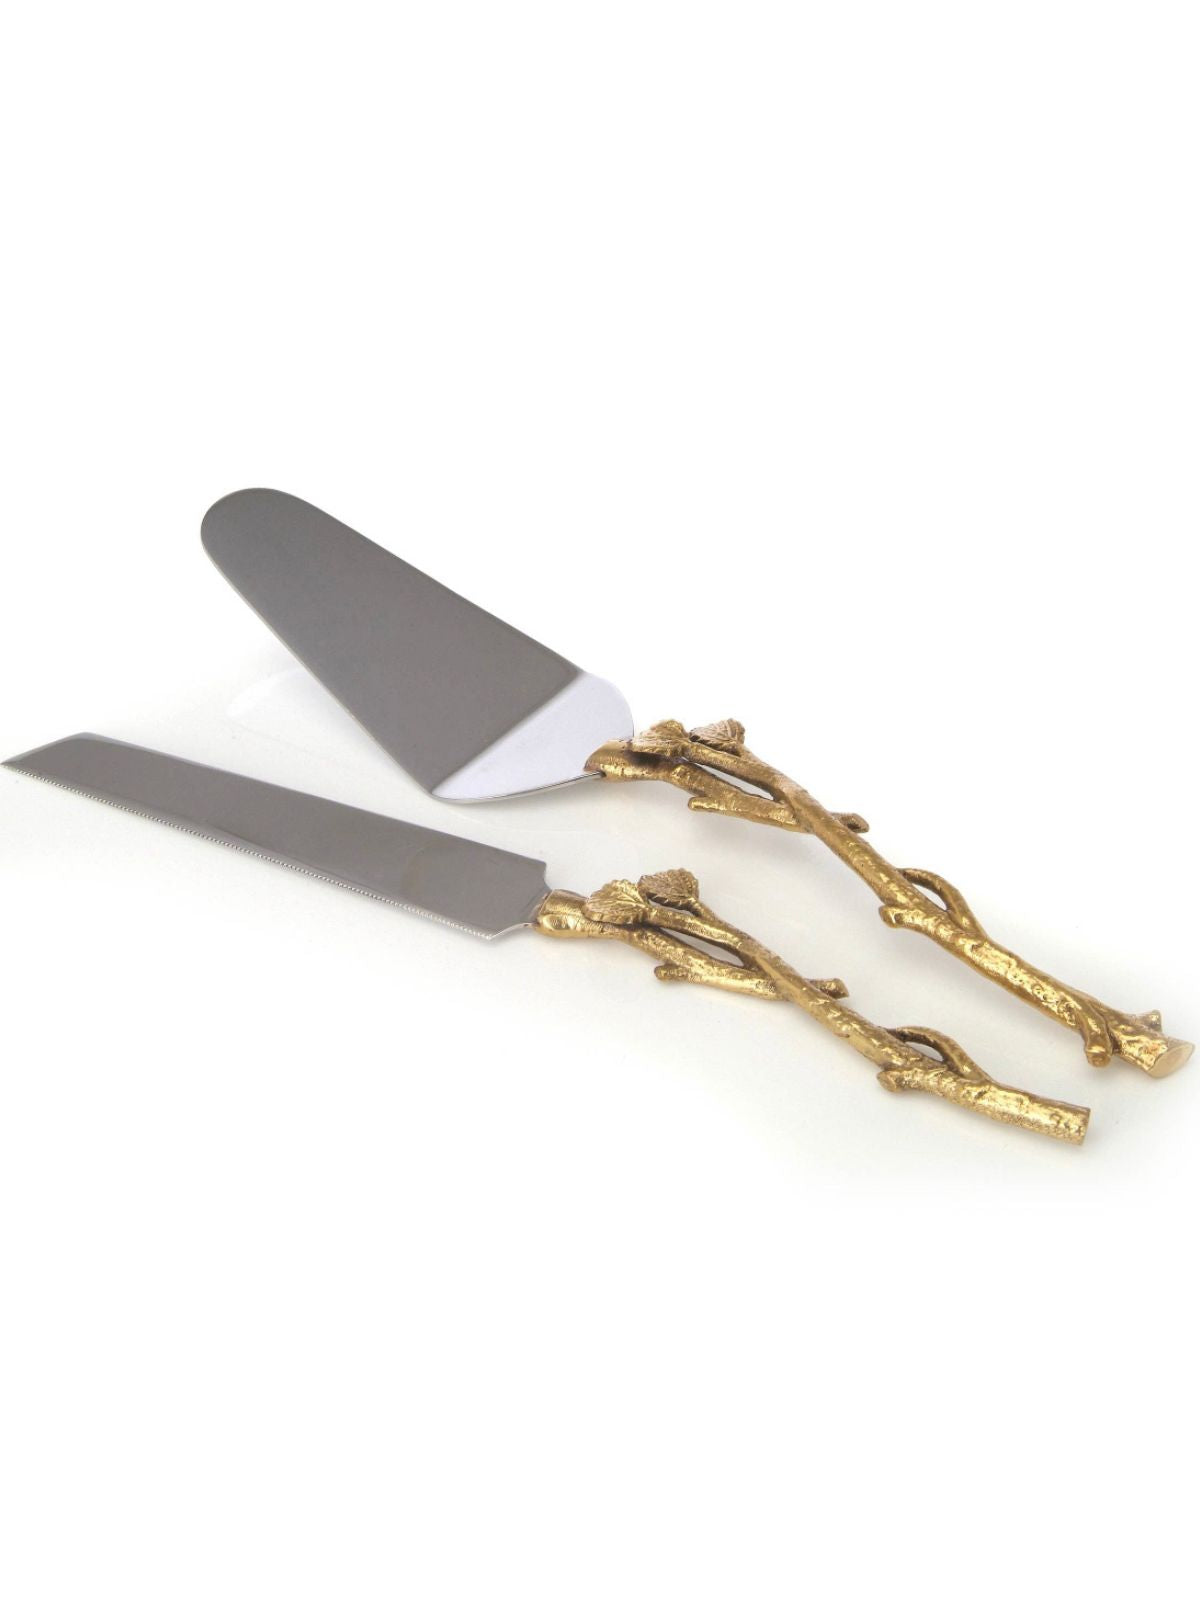 Cake Server and Knife Set With Gold Branch Leaf Designed Handles.